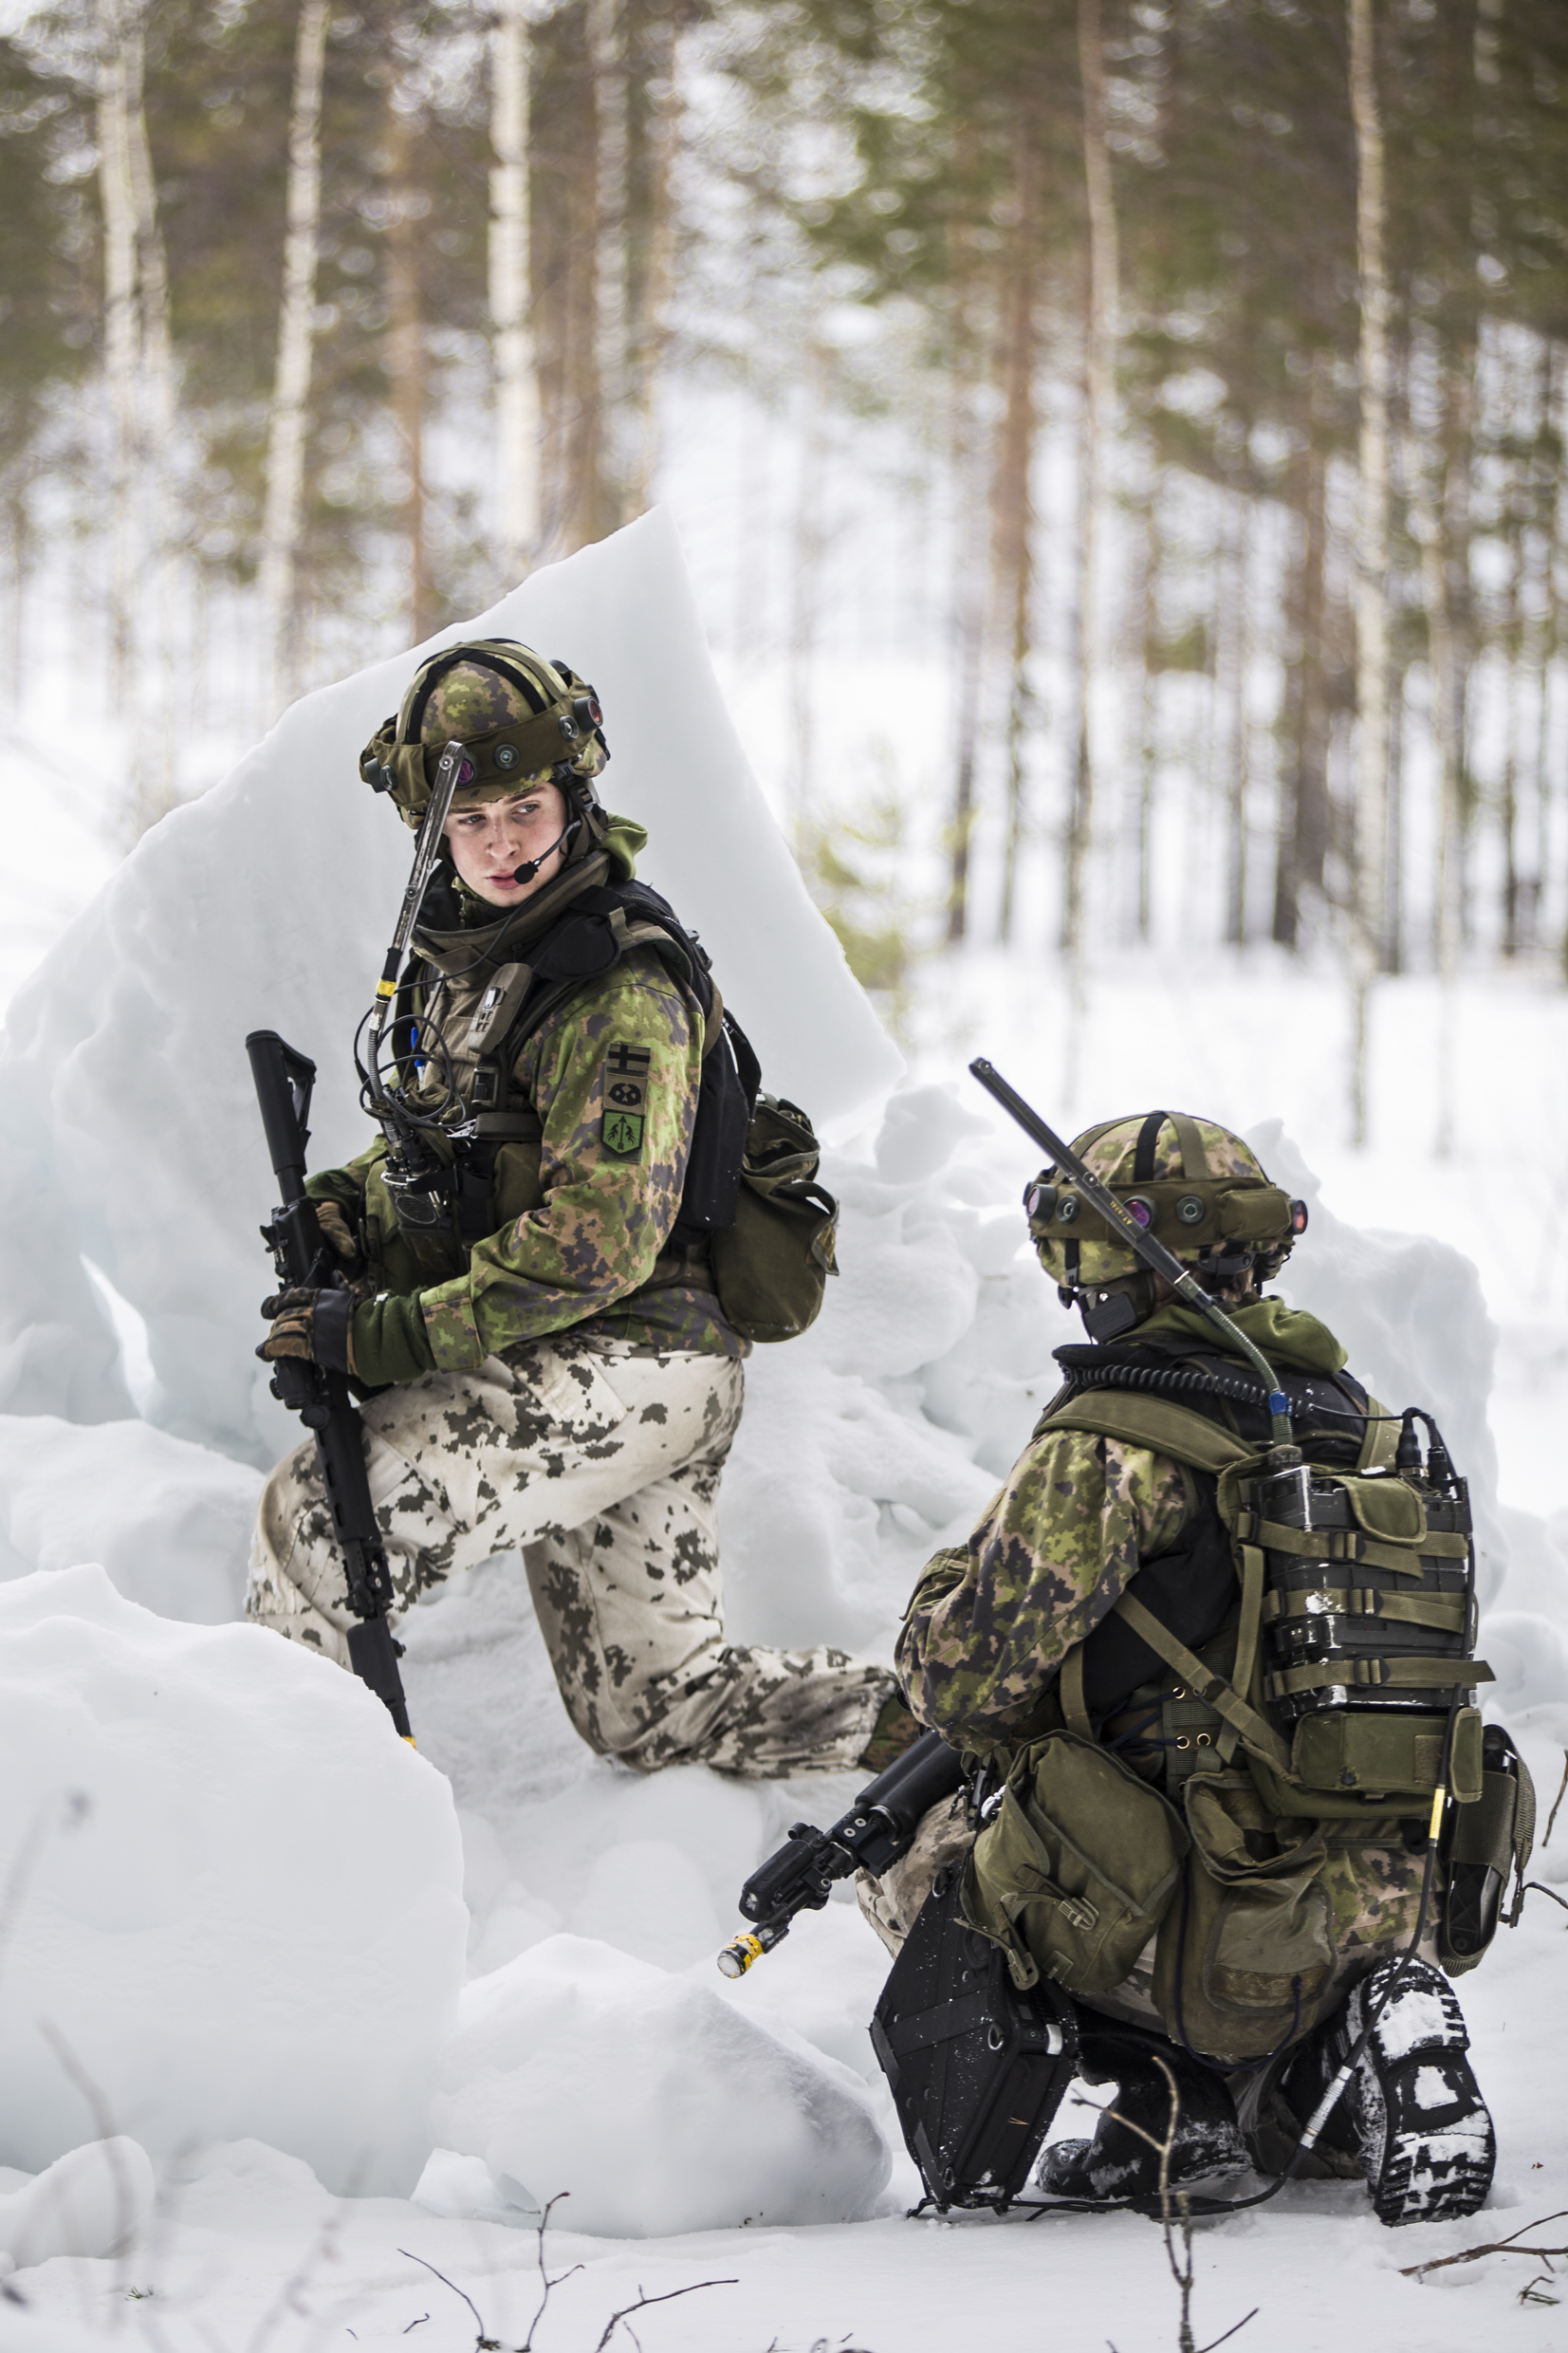 Kaksi sotilasta lumessa korkeassa polviasennossa, toinen kääntyneenä katsomaan toista.